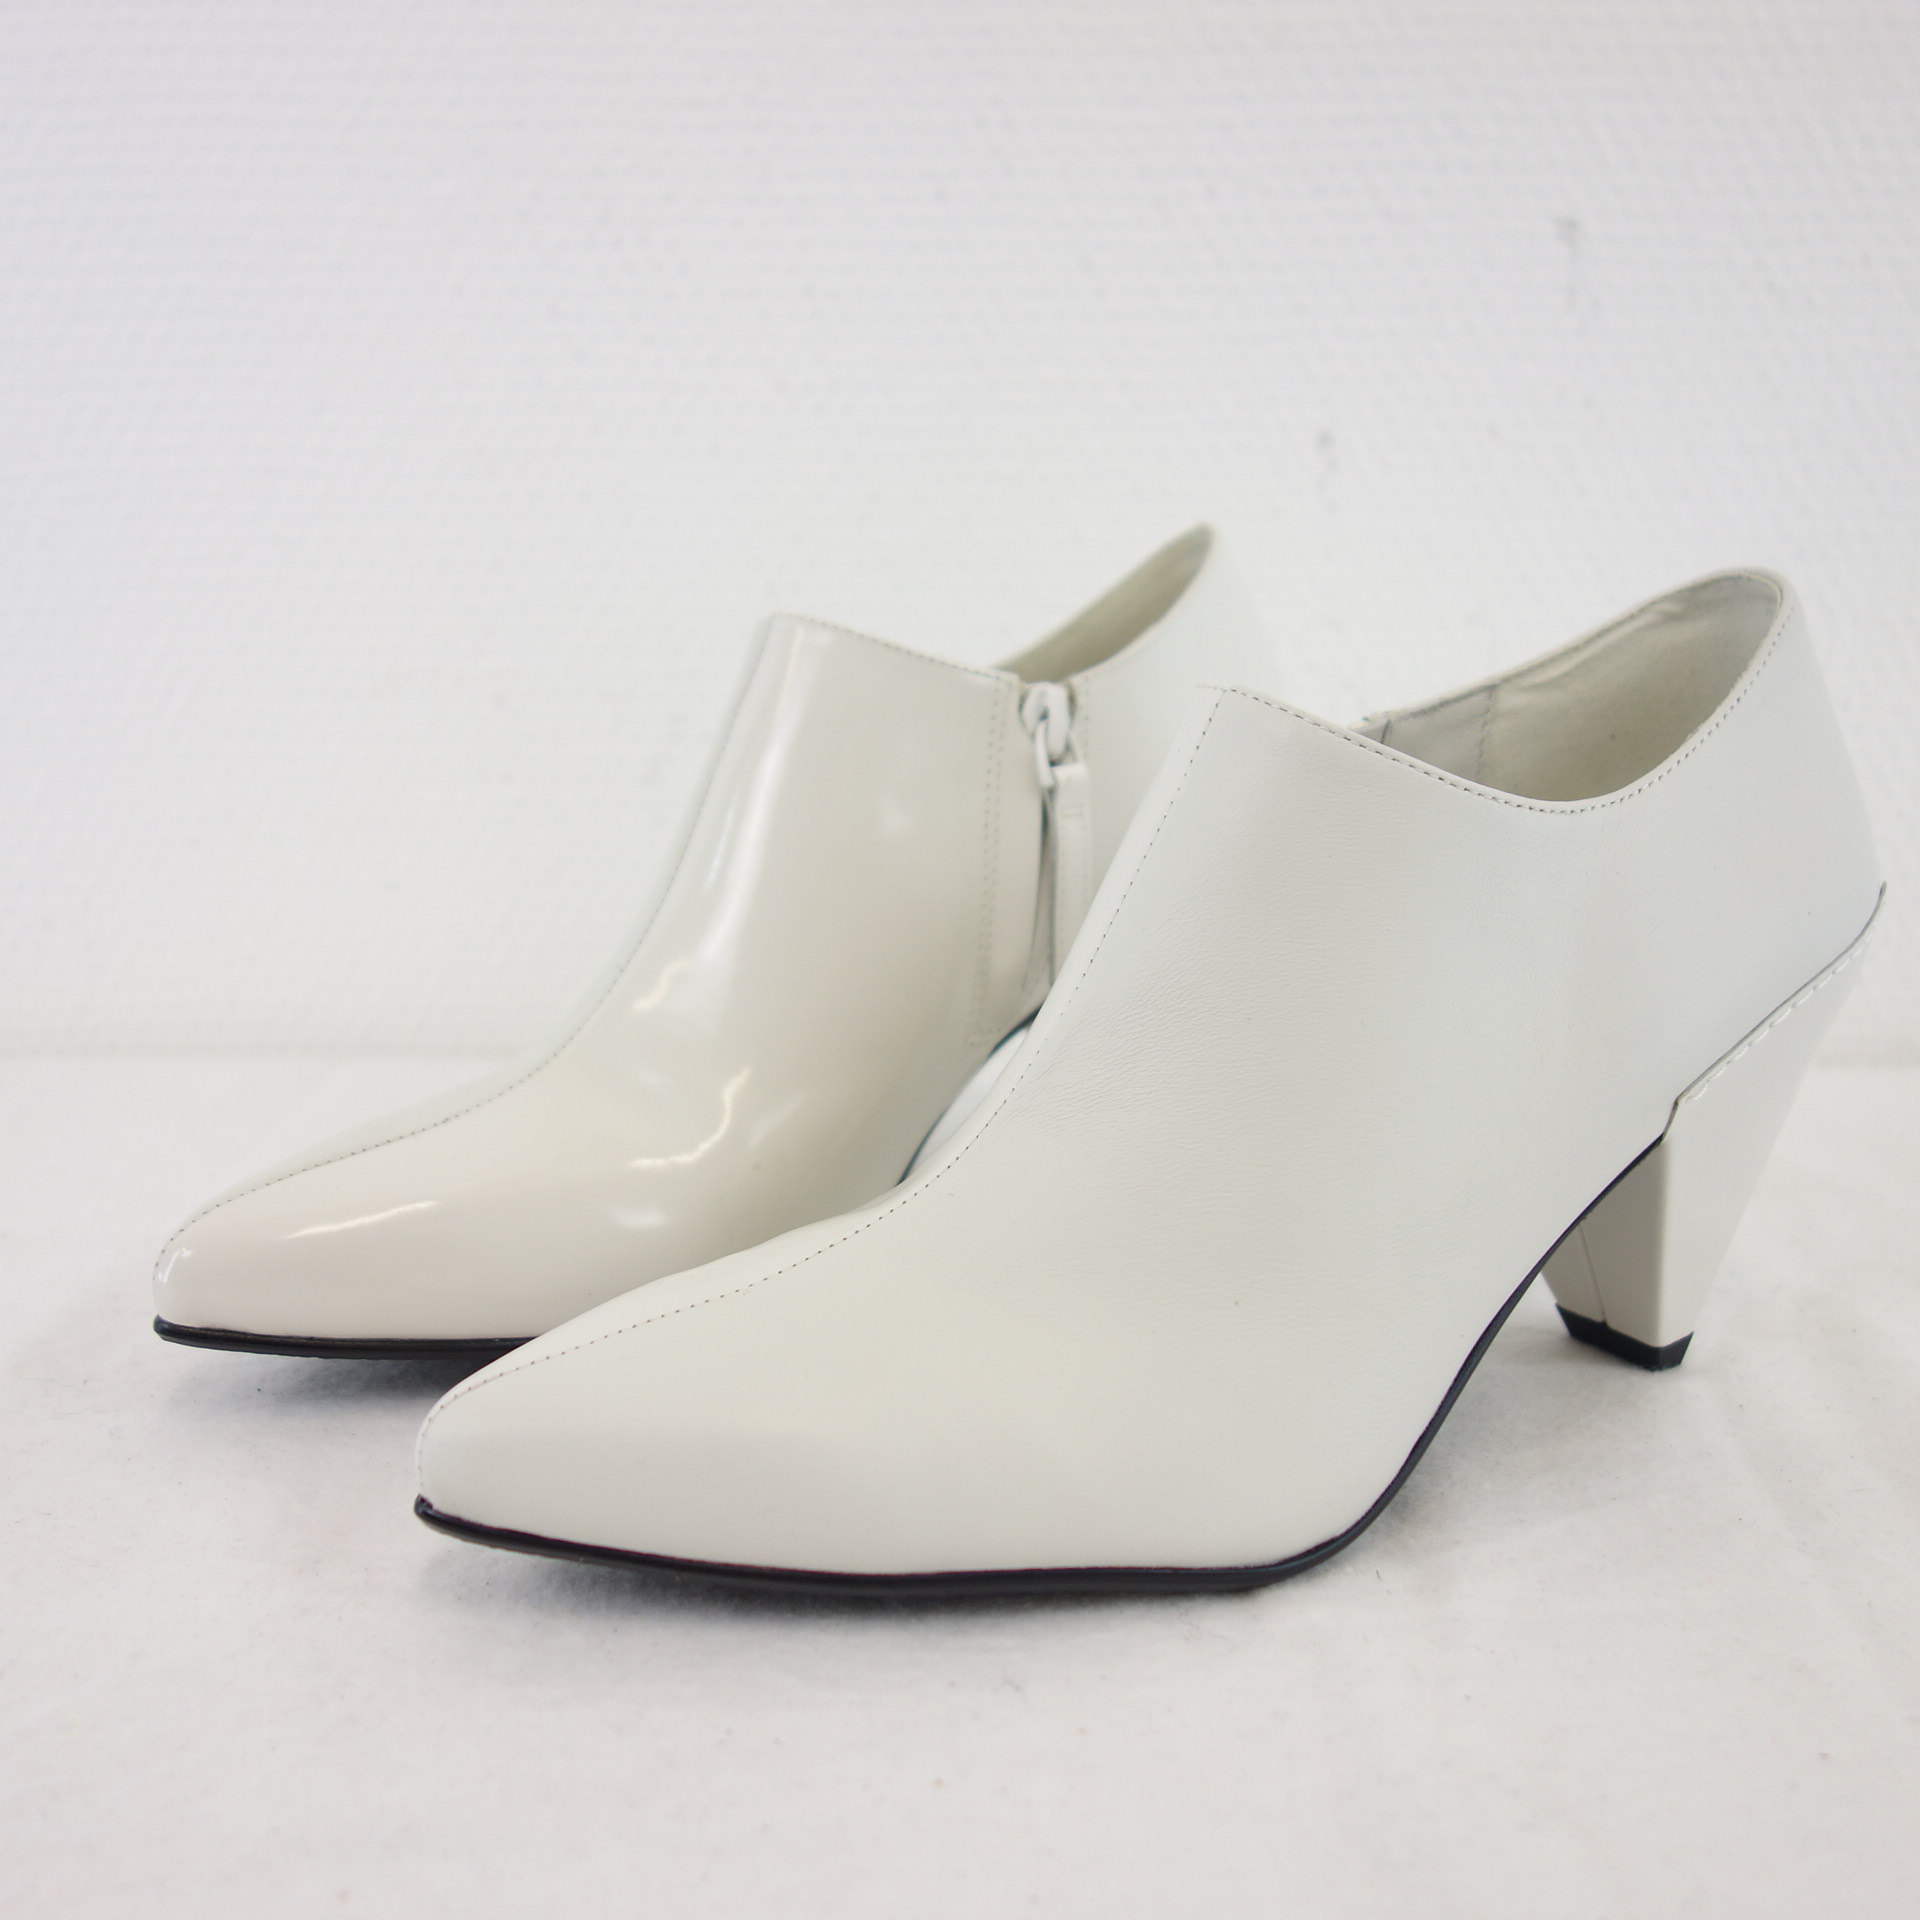 UN UNITED NUDE Damen Schuhe Ankle Boots Stiefeletten Leder Matt Glanz Weiß 